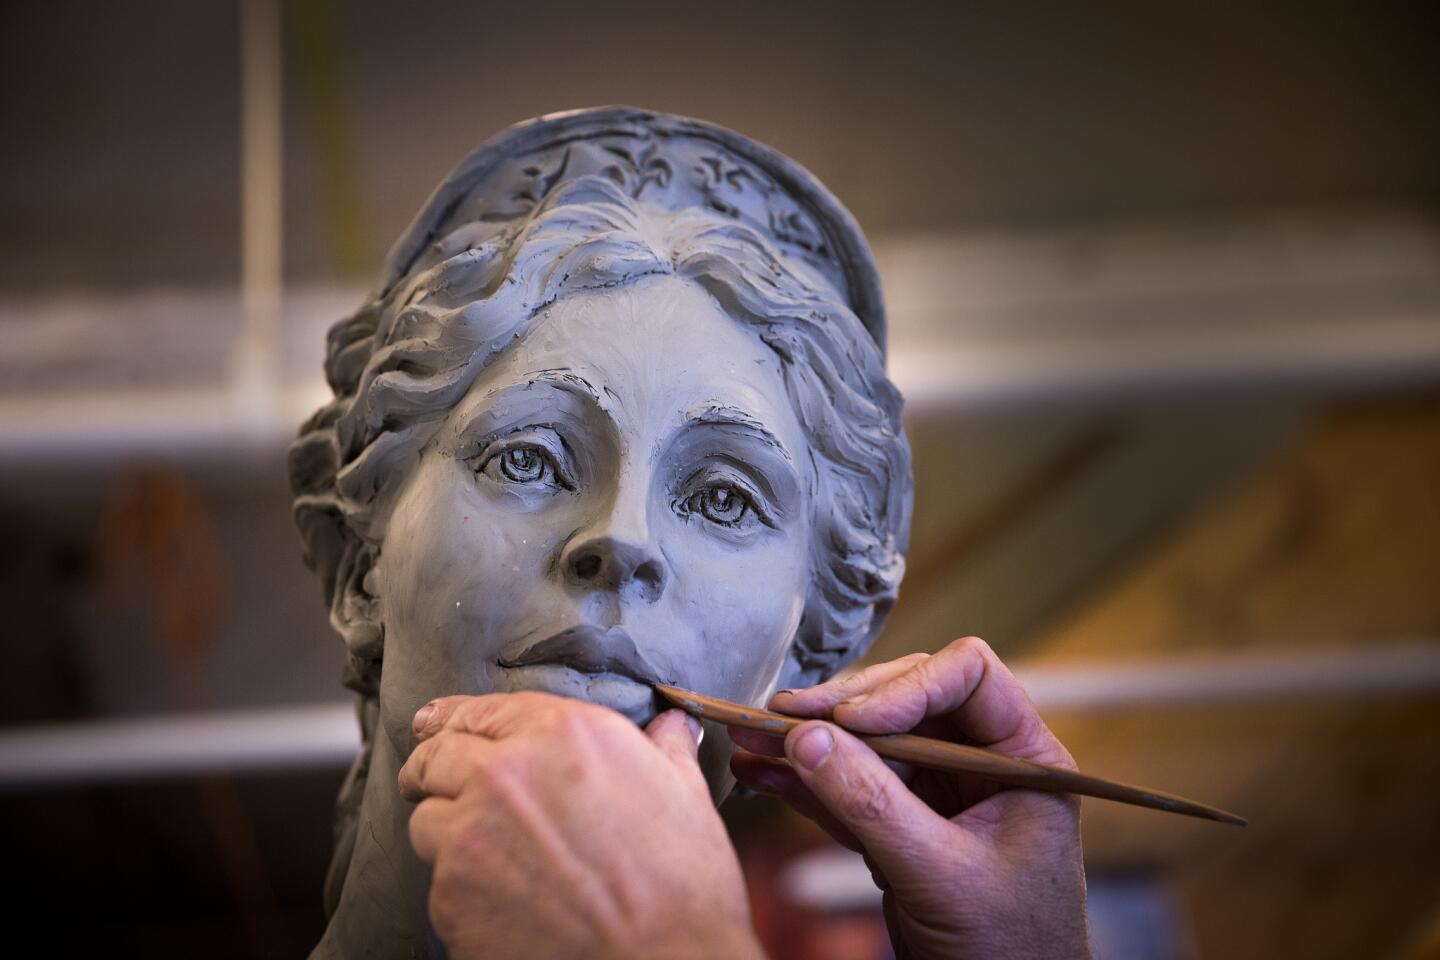 Hecuba, queen of Troy sculpture unveiled